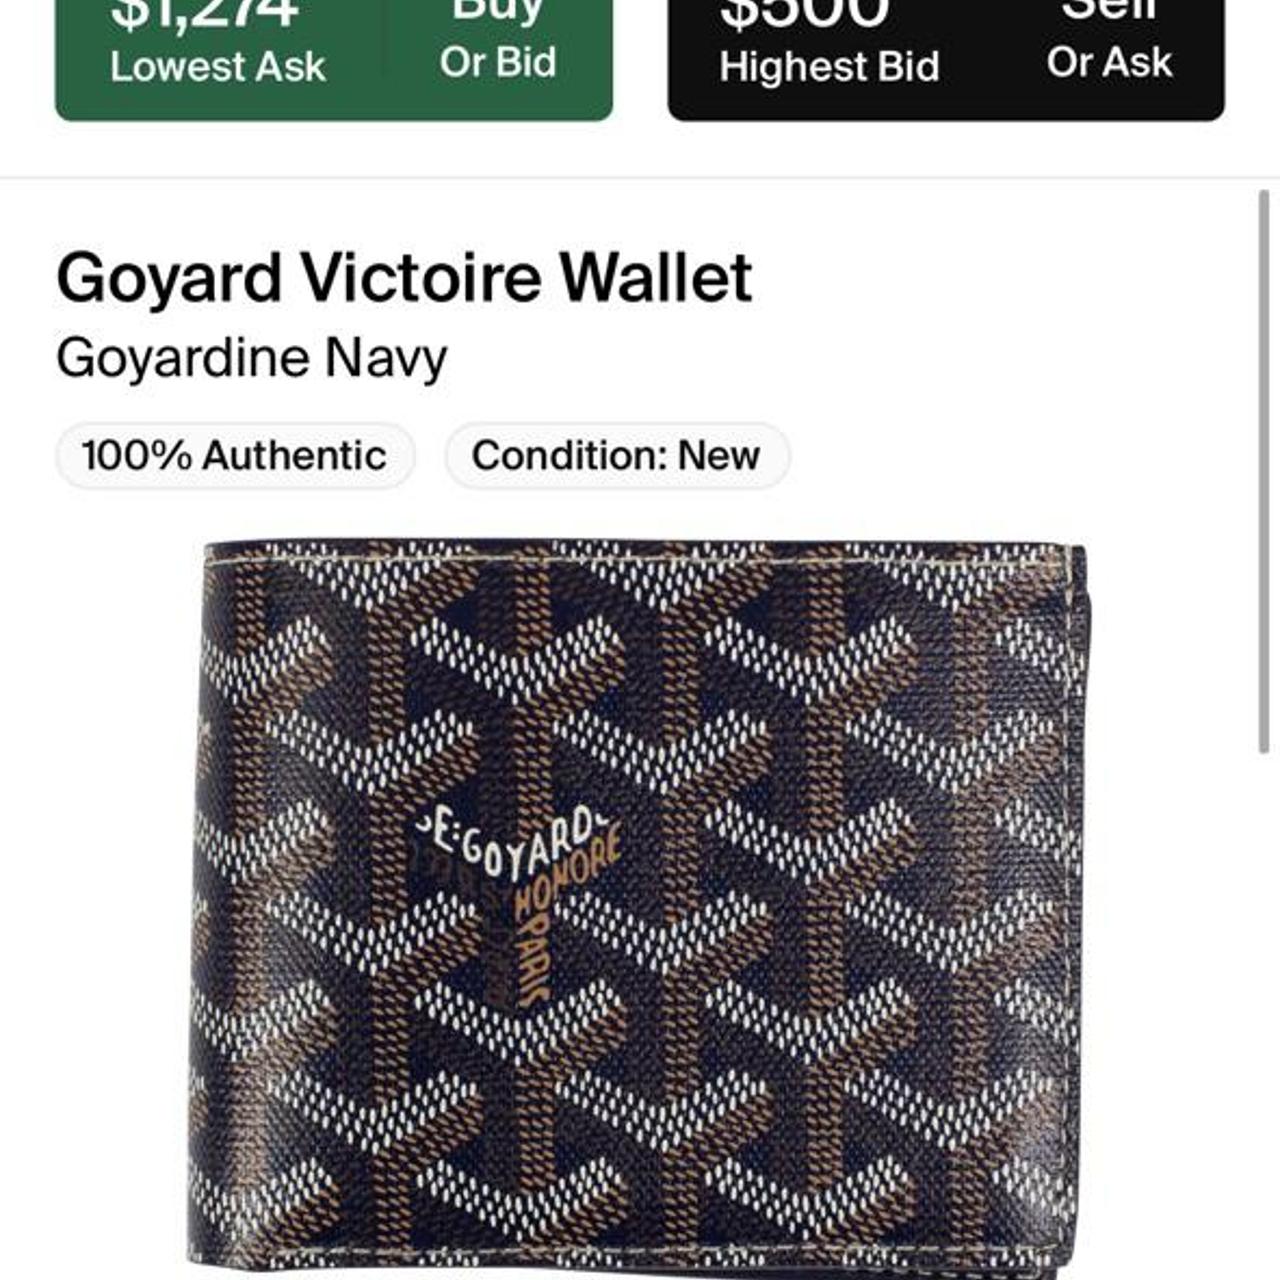 navy goyard wallet